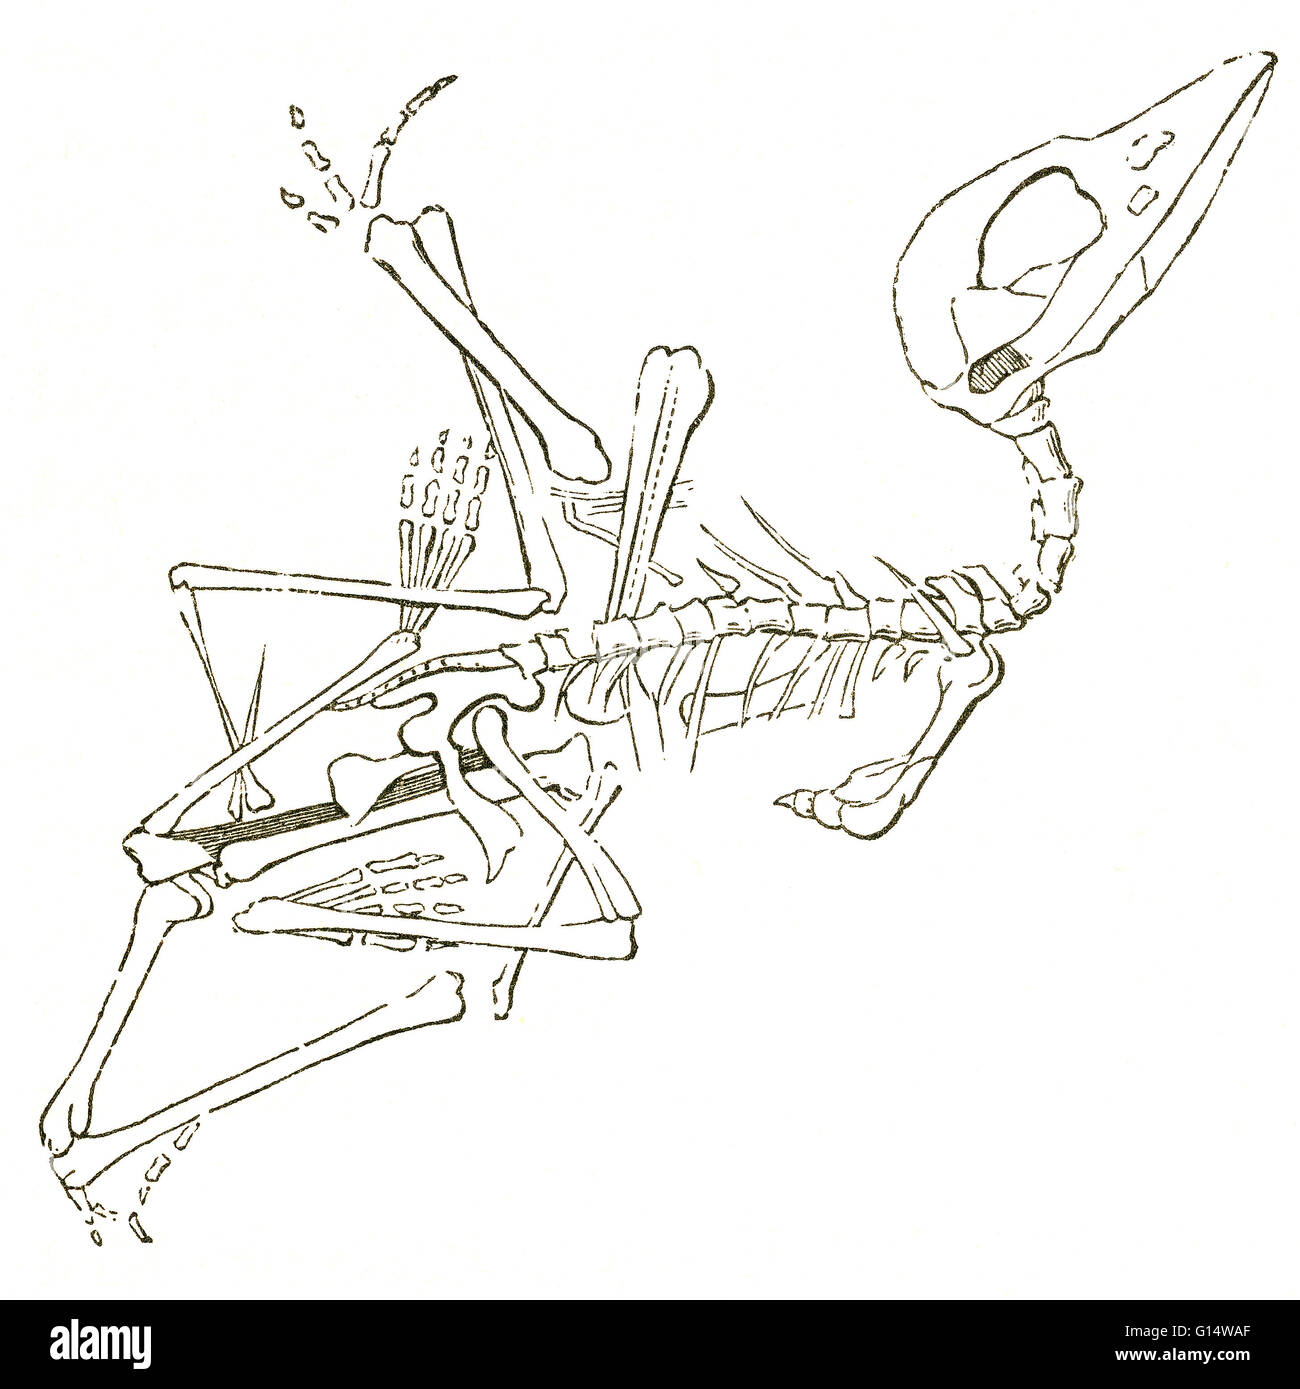 Abbildung eines Flugsauriers Fossils (Pterodactylus Brevirostris), von Louis Figuiers die Welt vor der Sintflut, 1867 amerikanische Ausgabe.   Figuier beschreibt Flugsauriern als "halb Vampir, halb-Schnepfen, mit Krokodil die Zähne."  Dieses Fossil wurde Entdeckungen Stockfoto